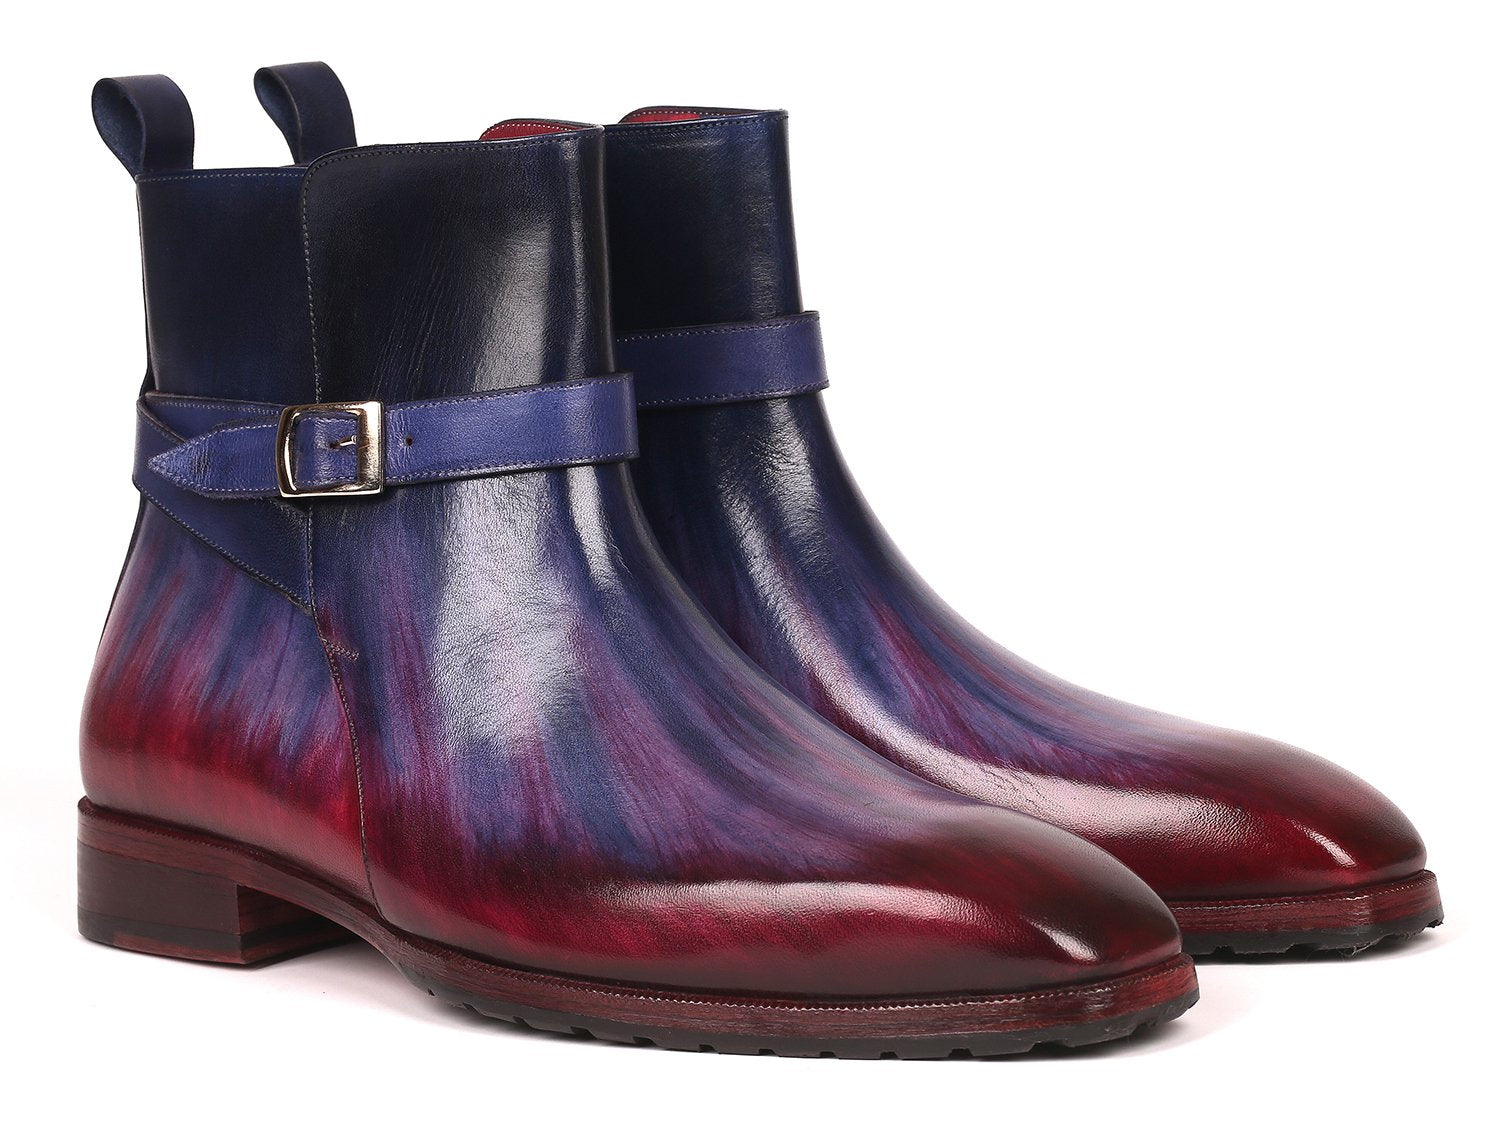 multicolor boots